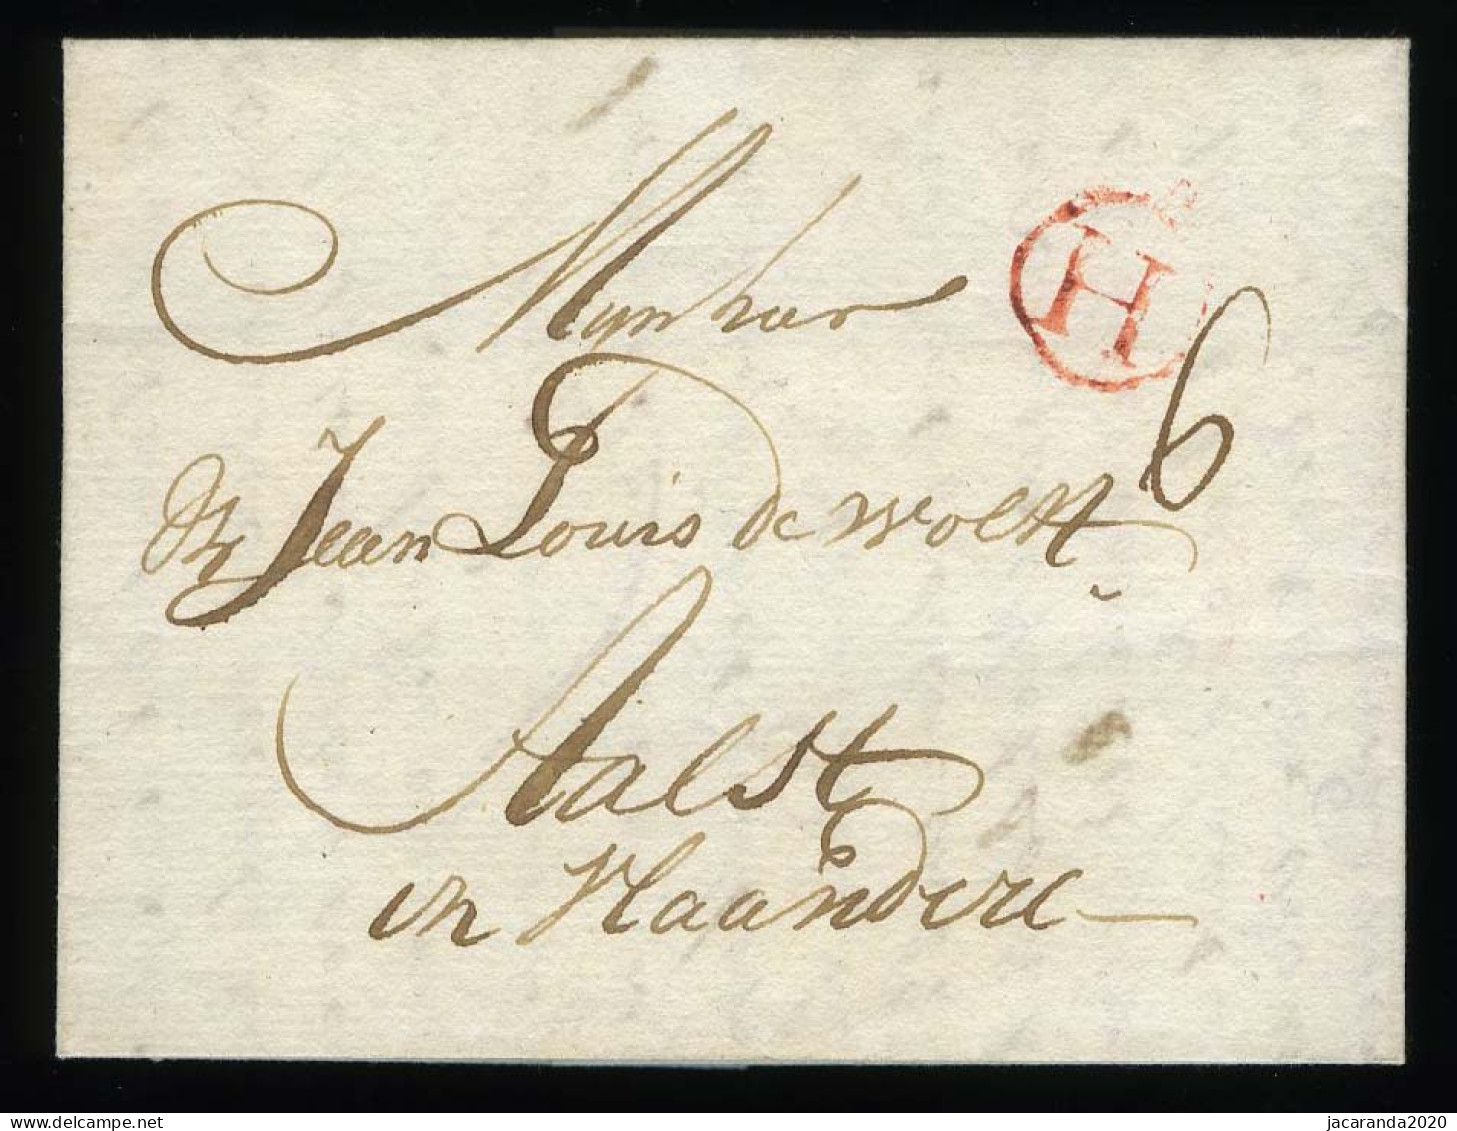 België Voorloper - Précurseur - 17 September 1779 - Cachet Rouge H - Port 6 - 1714-1794 (Oesterreichische Niederlande)